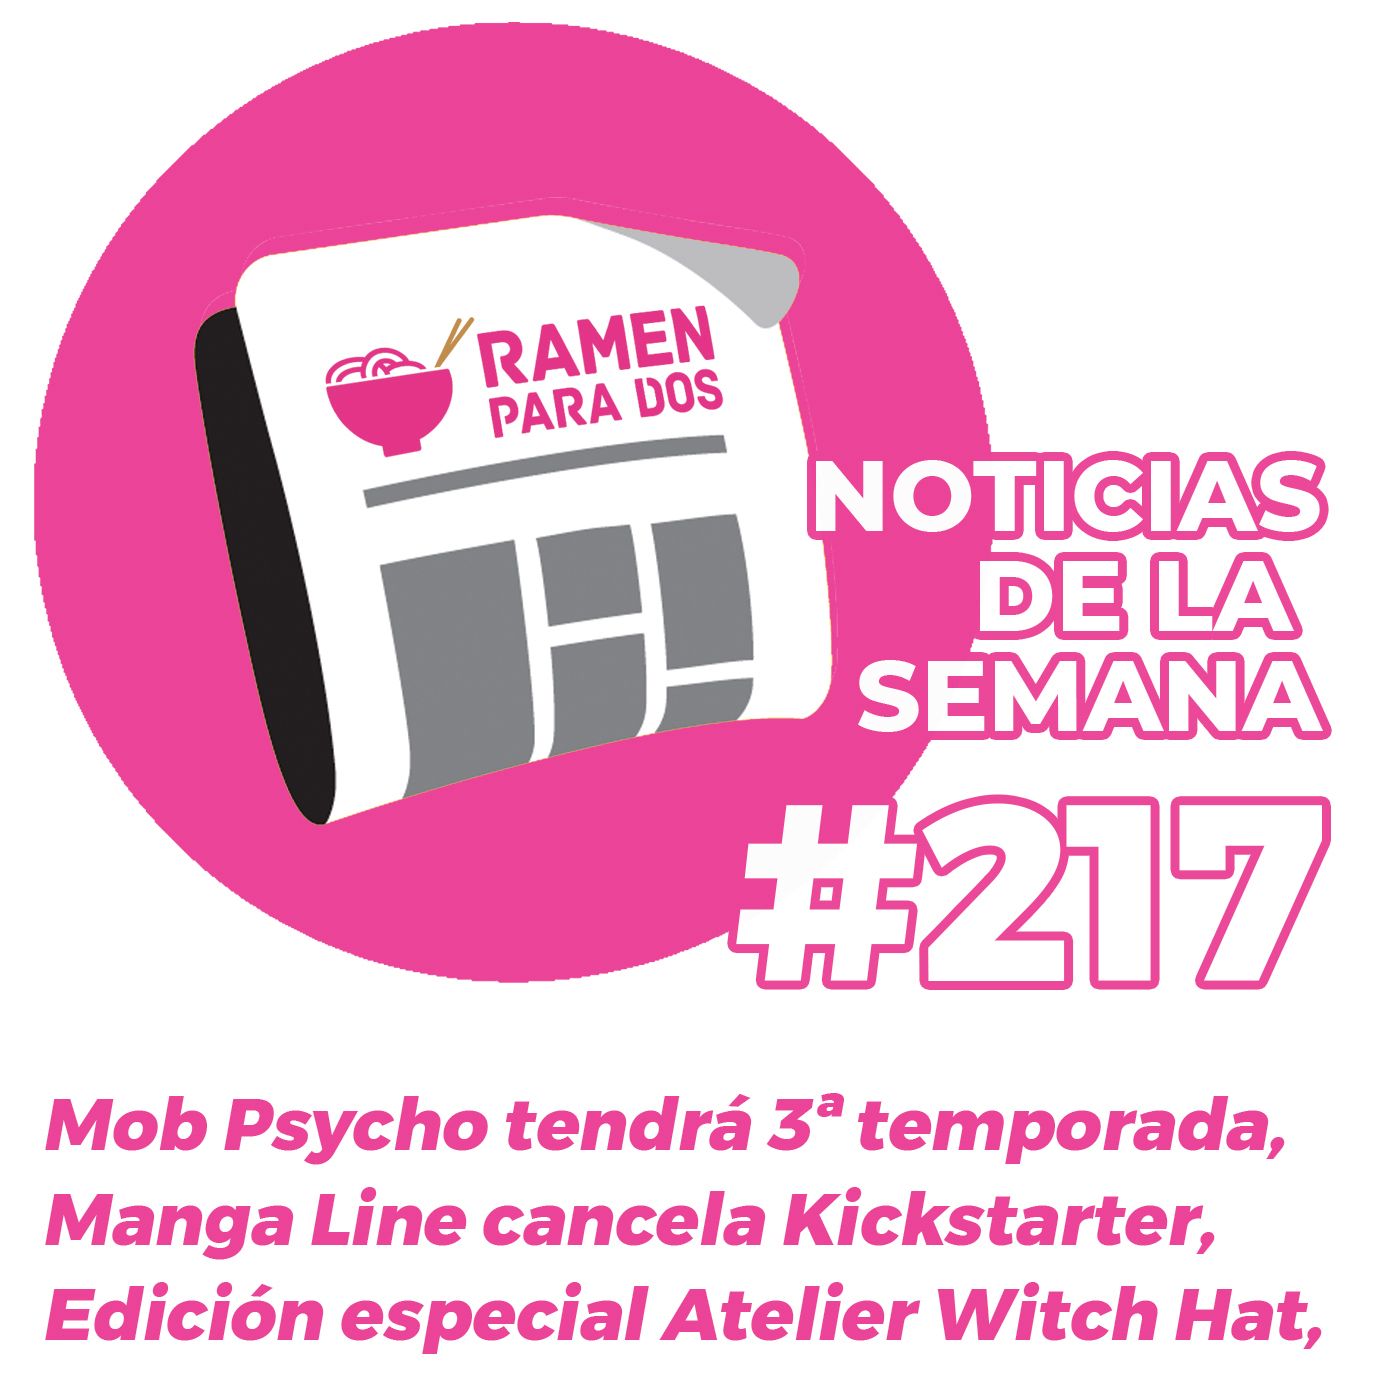 217. Mob Psycho tendrá 3ª temporada, Edición especial Atelier of the Witch Hat